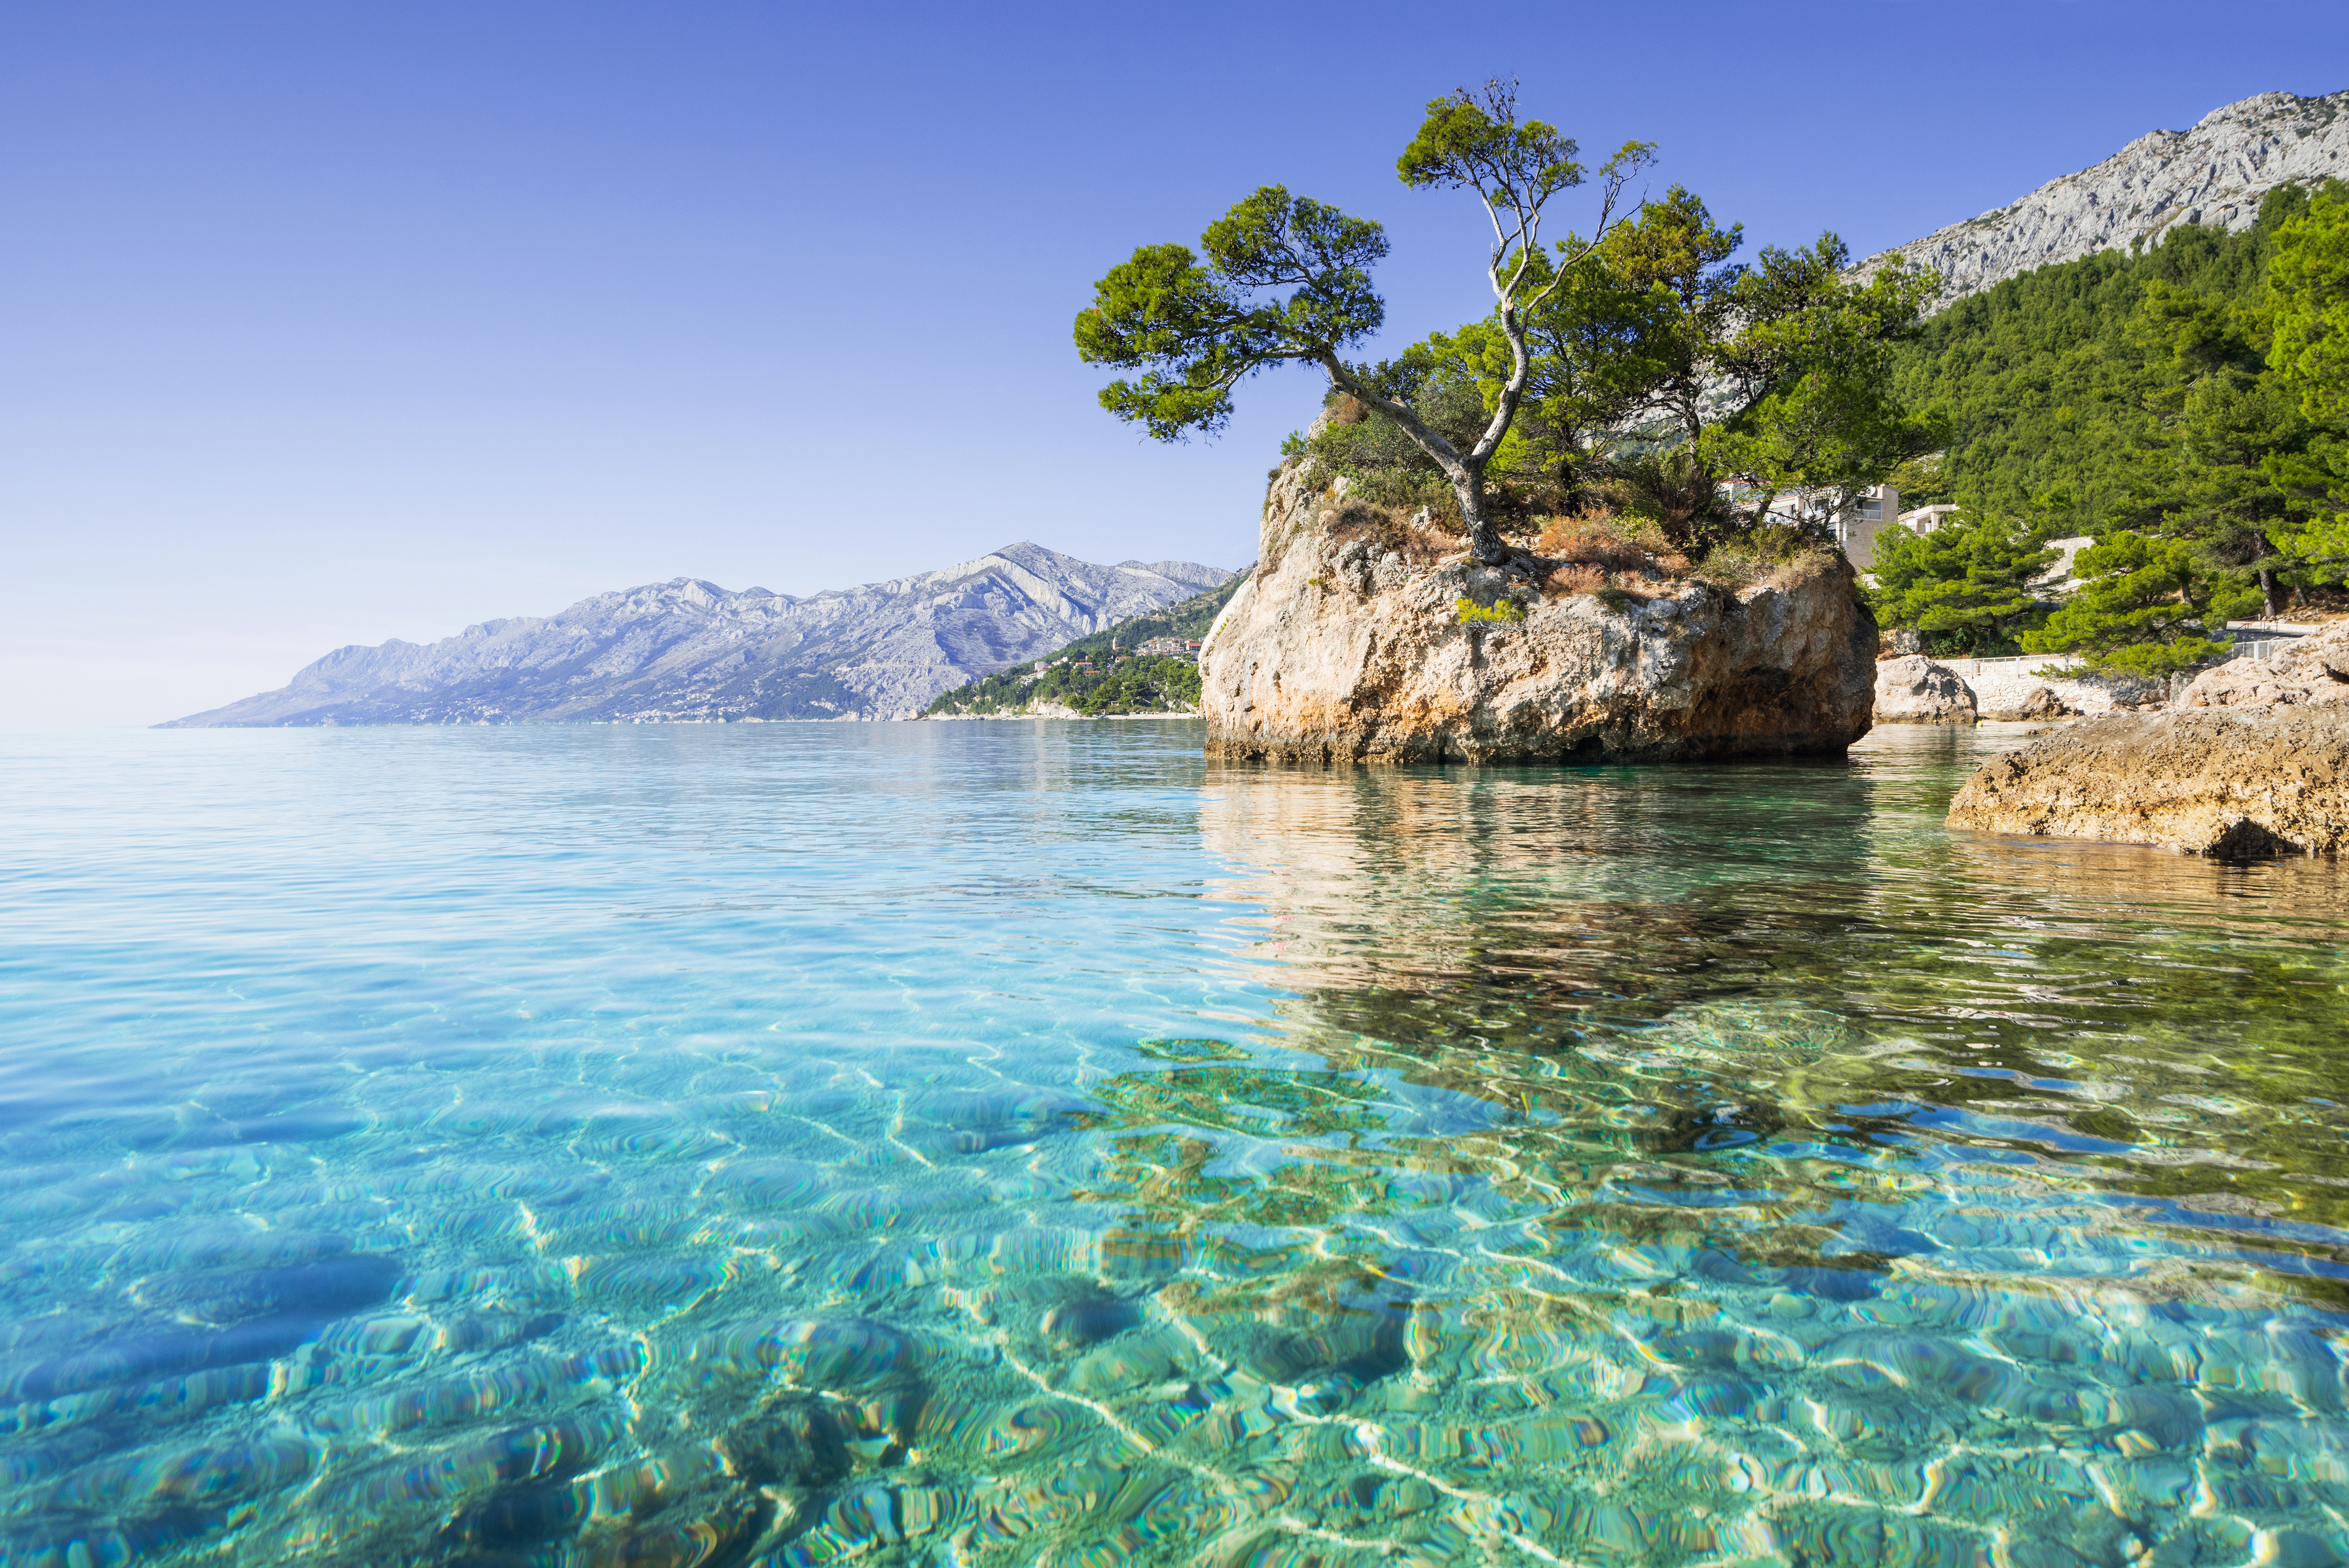 Beautiful bay in the Mediterranean sea, Brela, Croatia